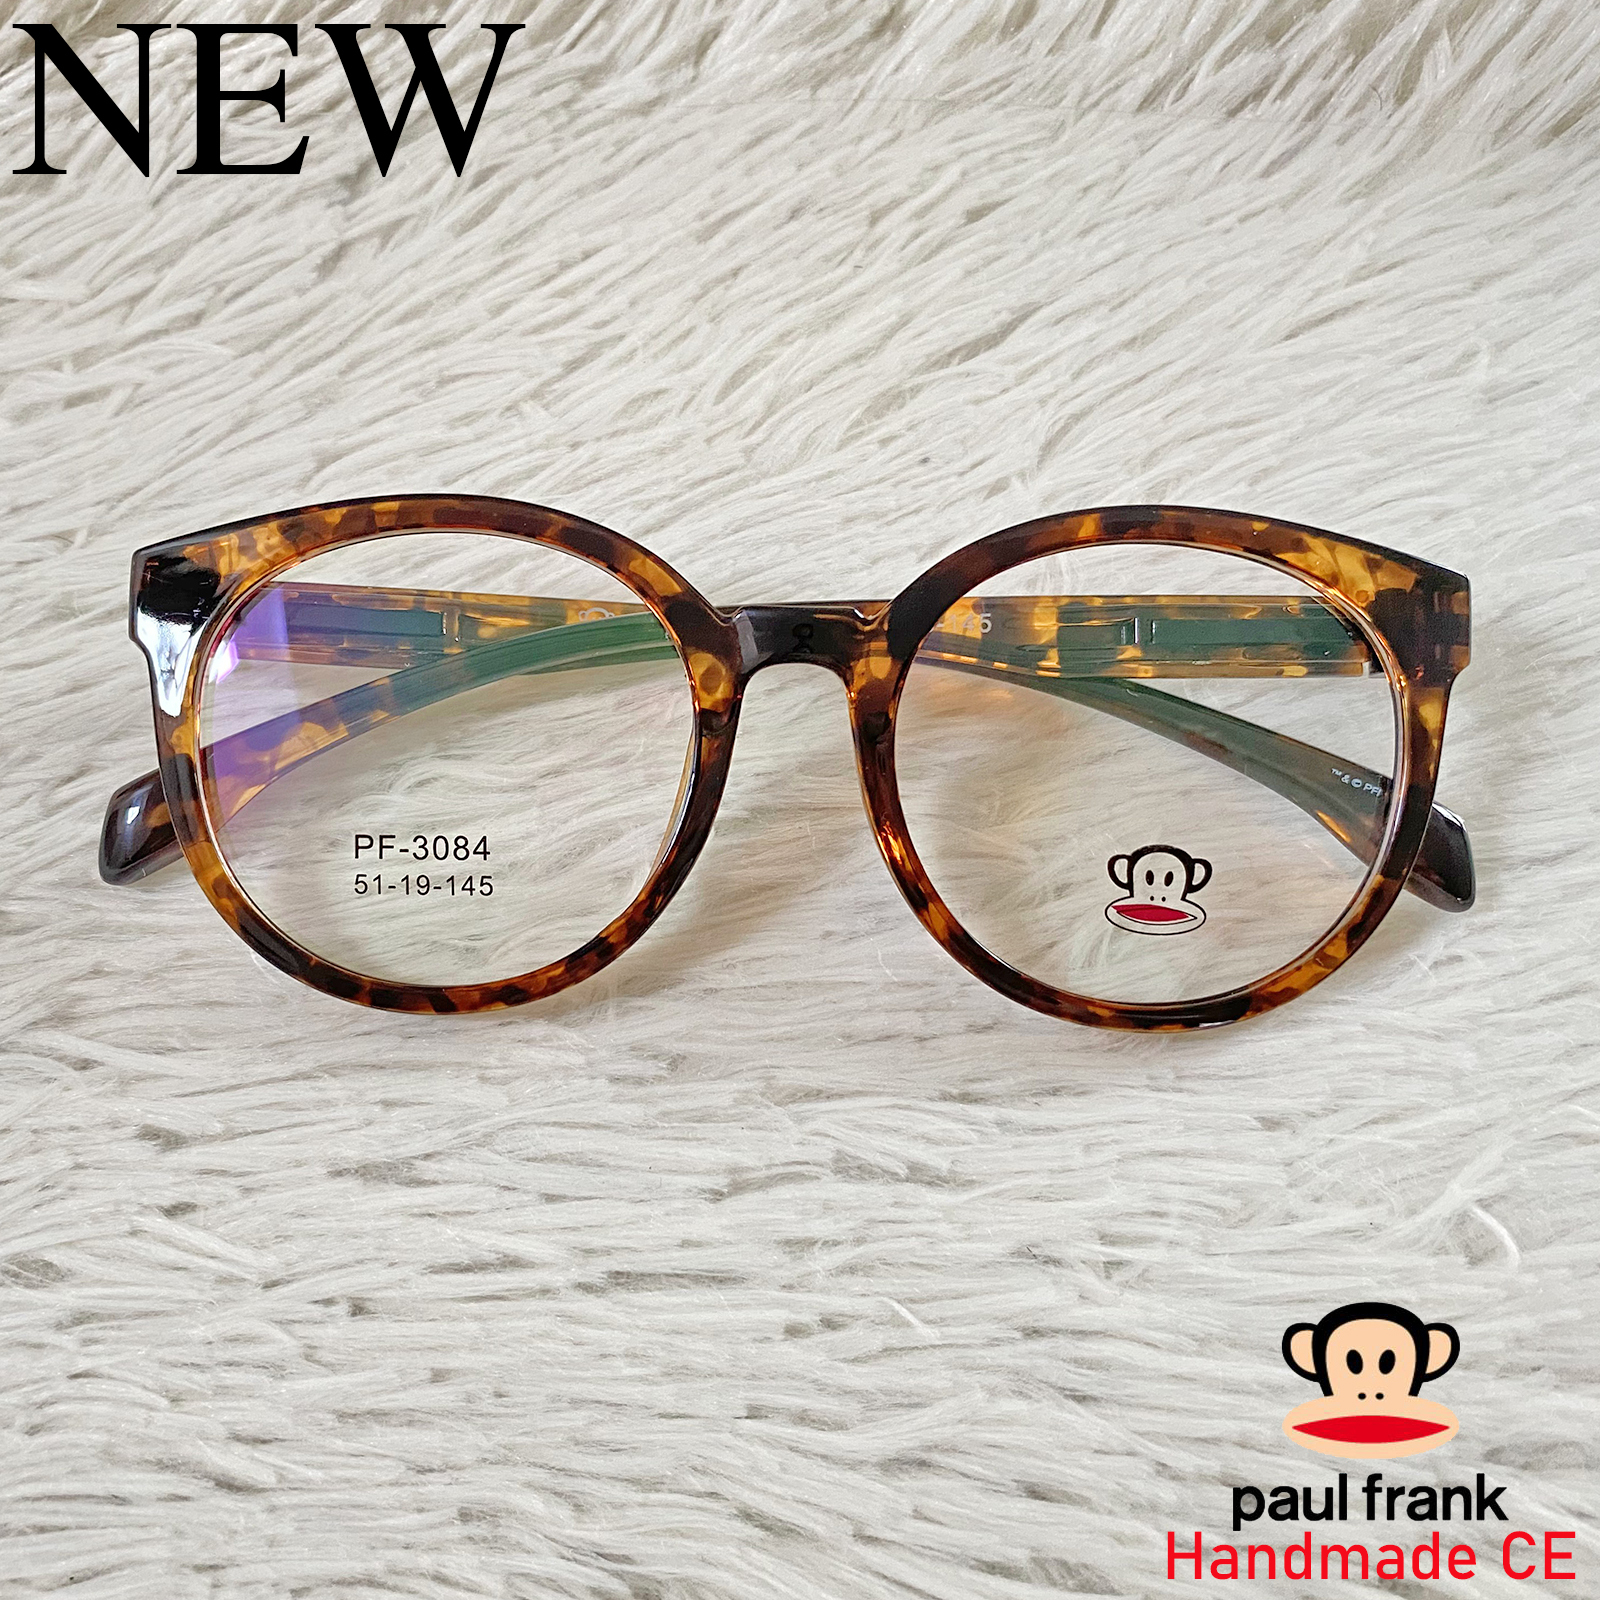 Paul Frank แว่นตาสำหรับตัดเลนส์ สายตา กรอบแว่นตา ชาย หญิง Fashion รุ่น 3084 น้ำตาลกละ กรอบเต็ม ทรงรี ขาข้อต่อ วัสดุ TR 90 รับตัดเลนส์ทุกชนิด